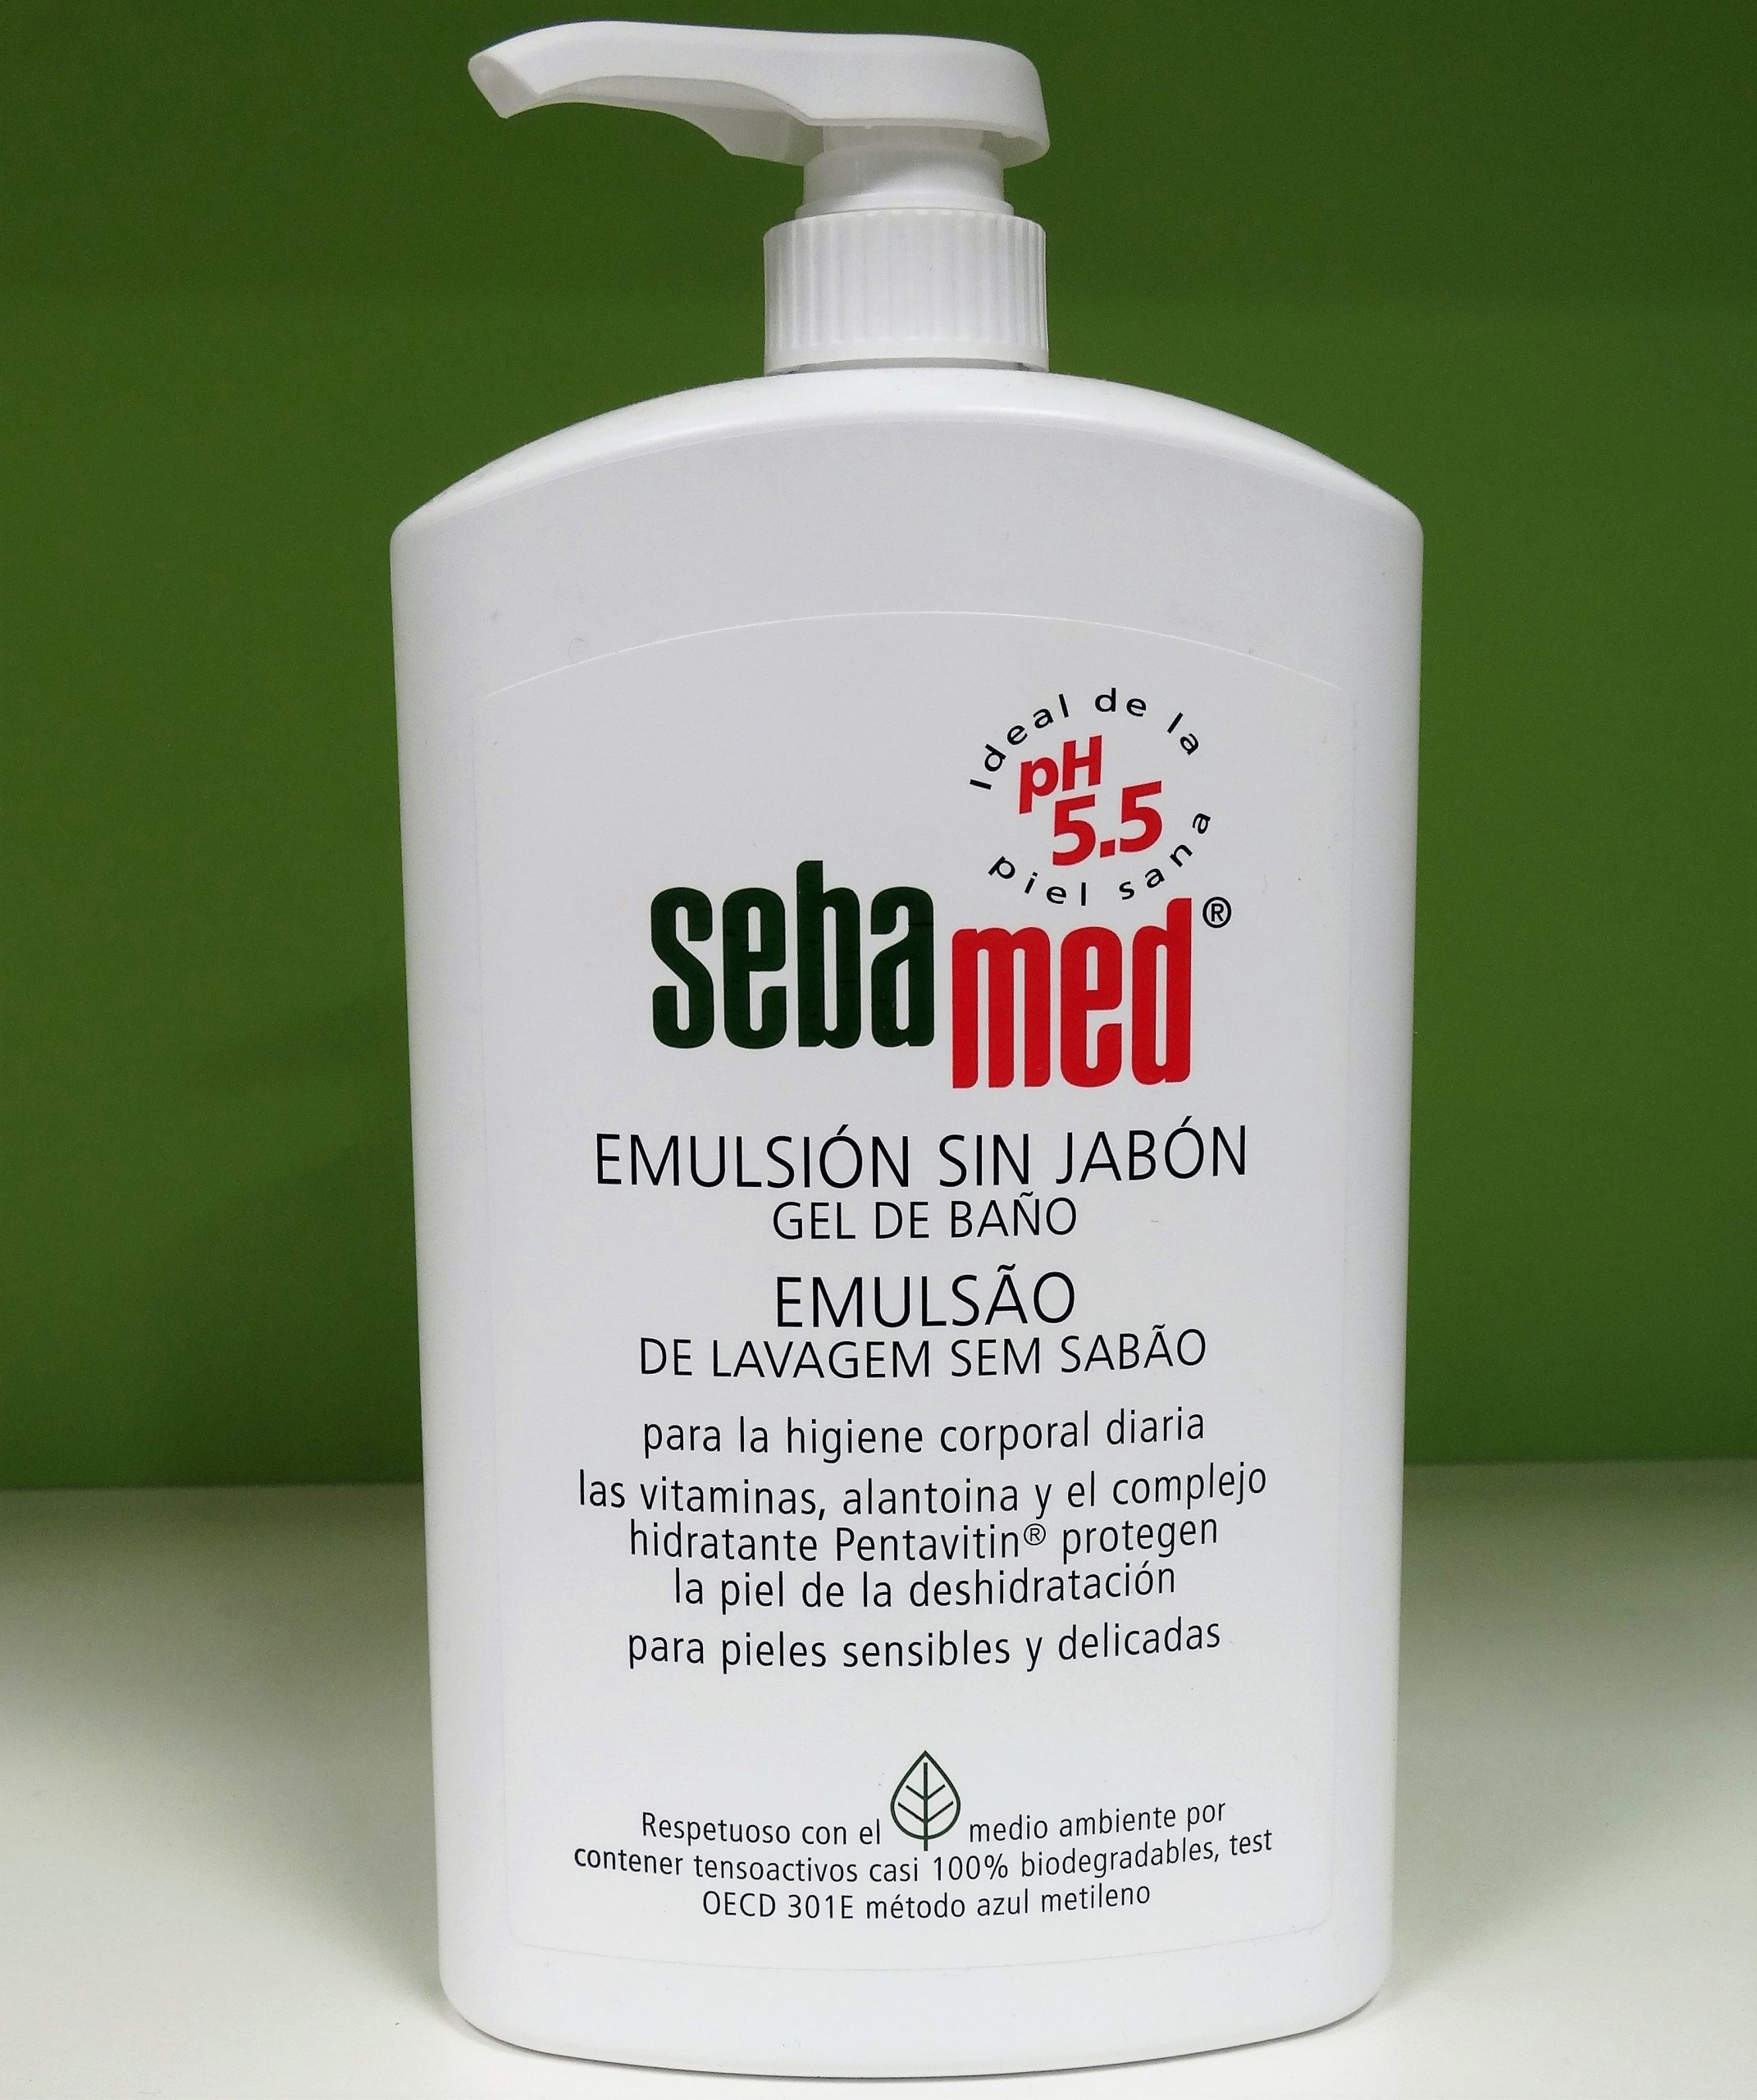 SEBAMED EMULSIÓN SIN JABÓN Gel de baño corporal sin jabón con el pH 5,5 de la piel sana para garantizar la conservación del equilibrio hídrico de la piel